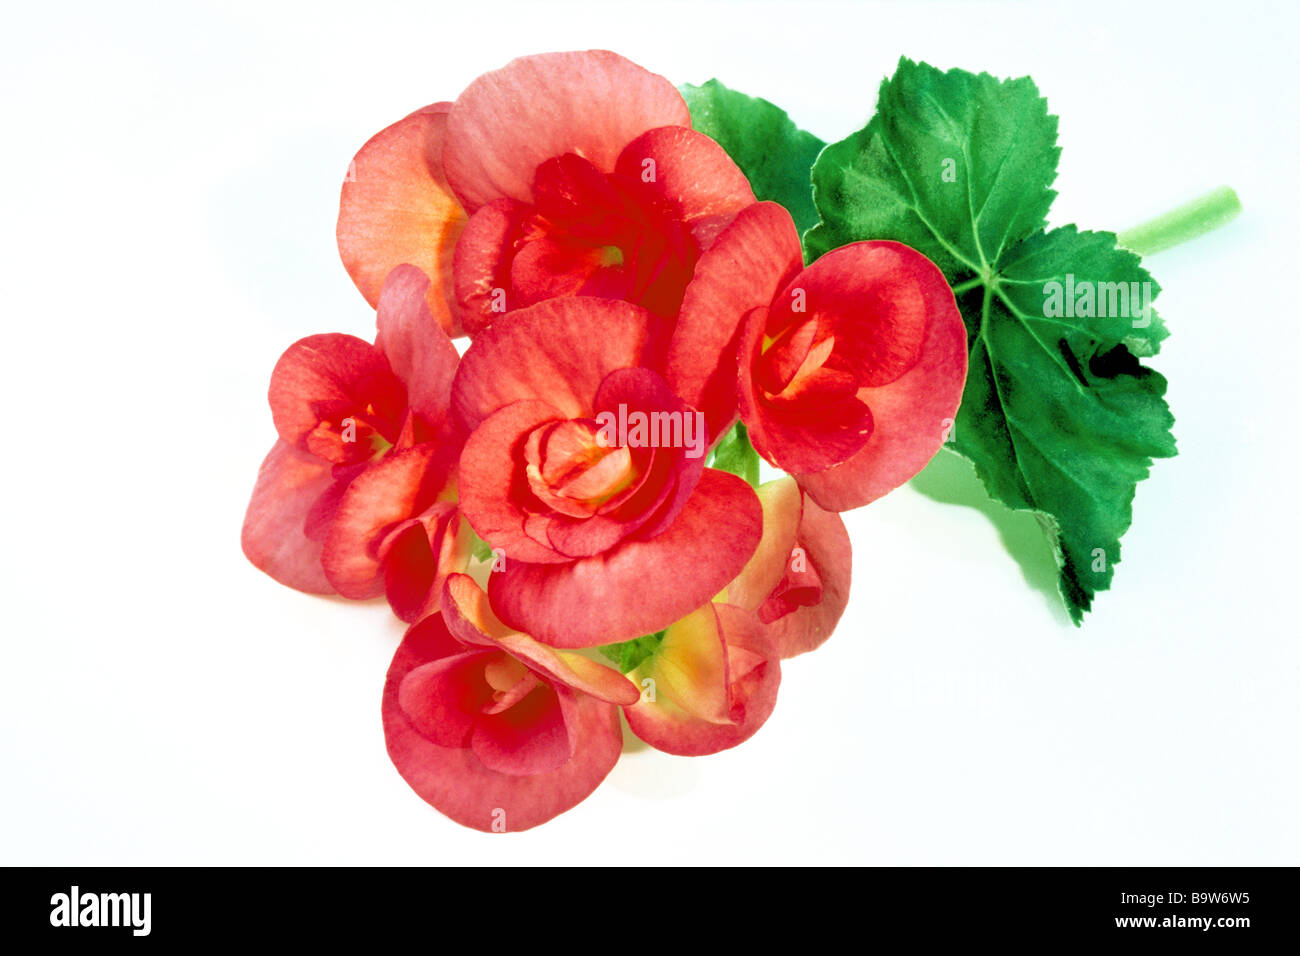 Elatior Begonia, Winter Flowering Begonia (Begonia x hiemalis), flower, studio picture. Stock Photo